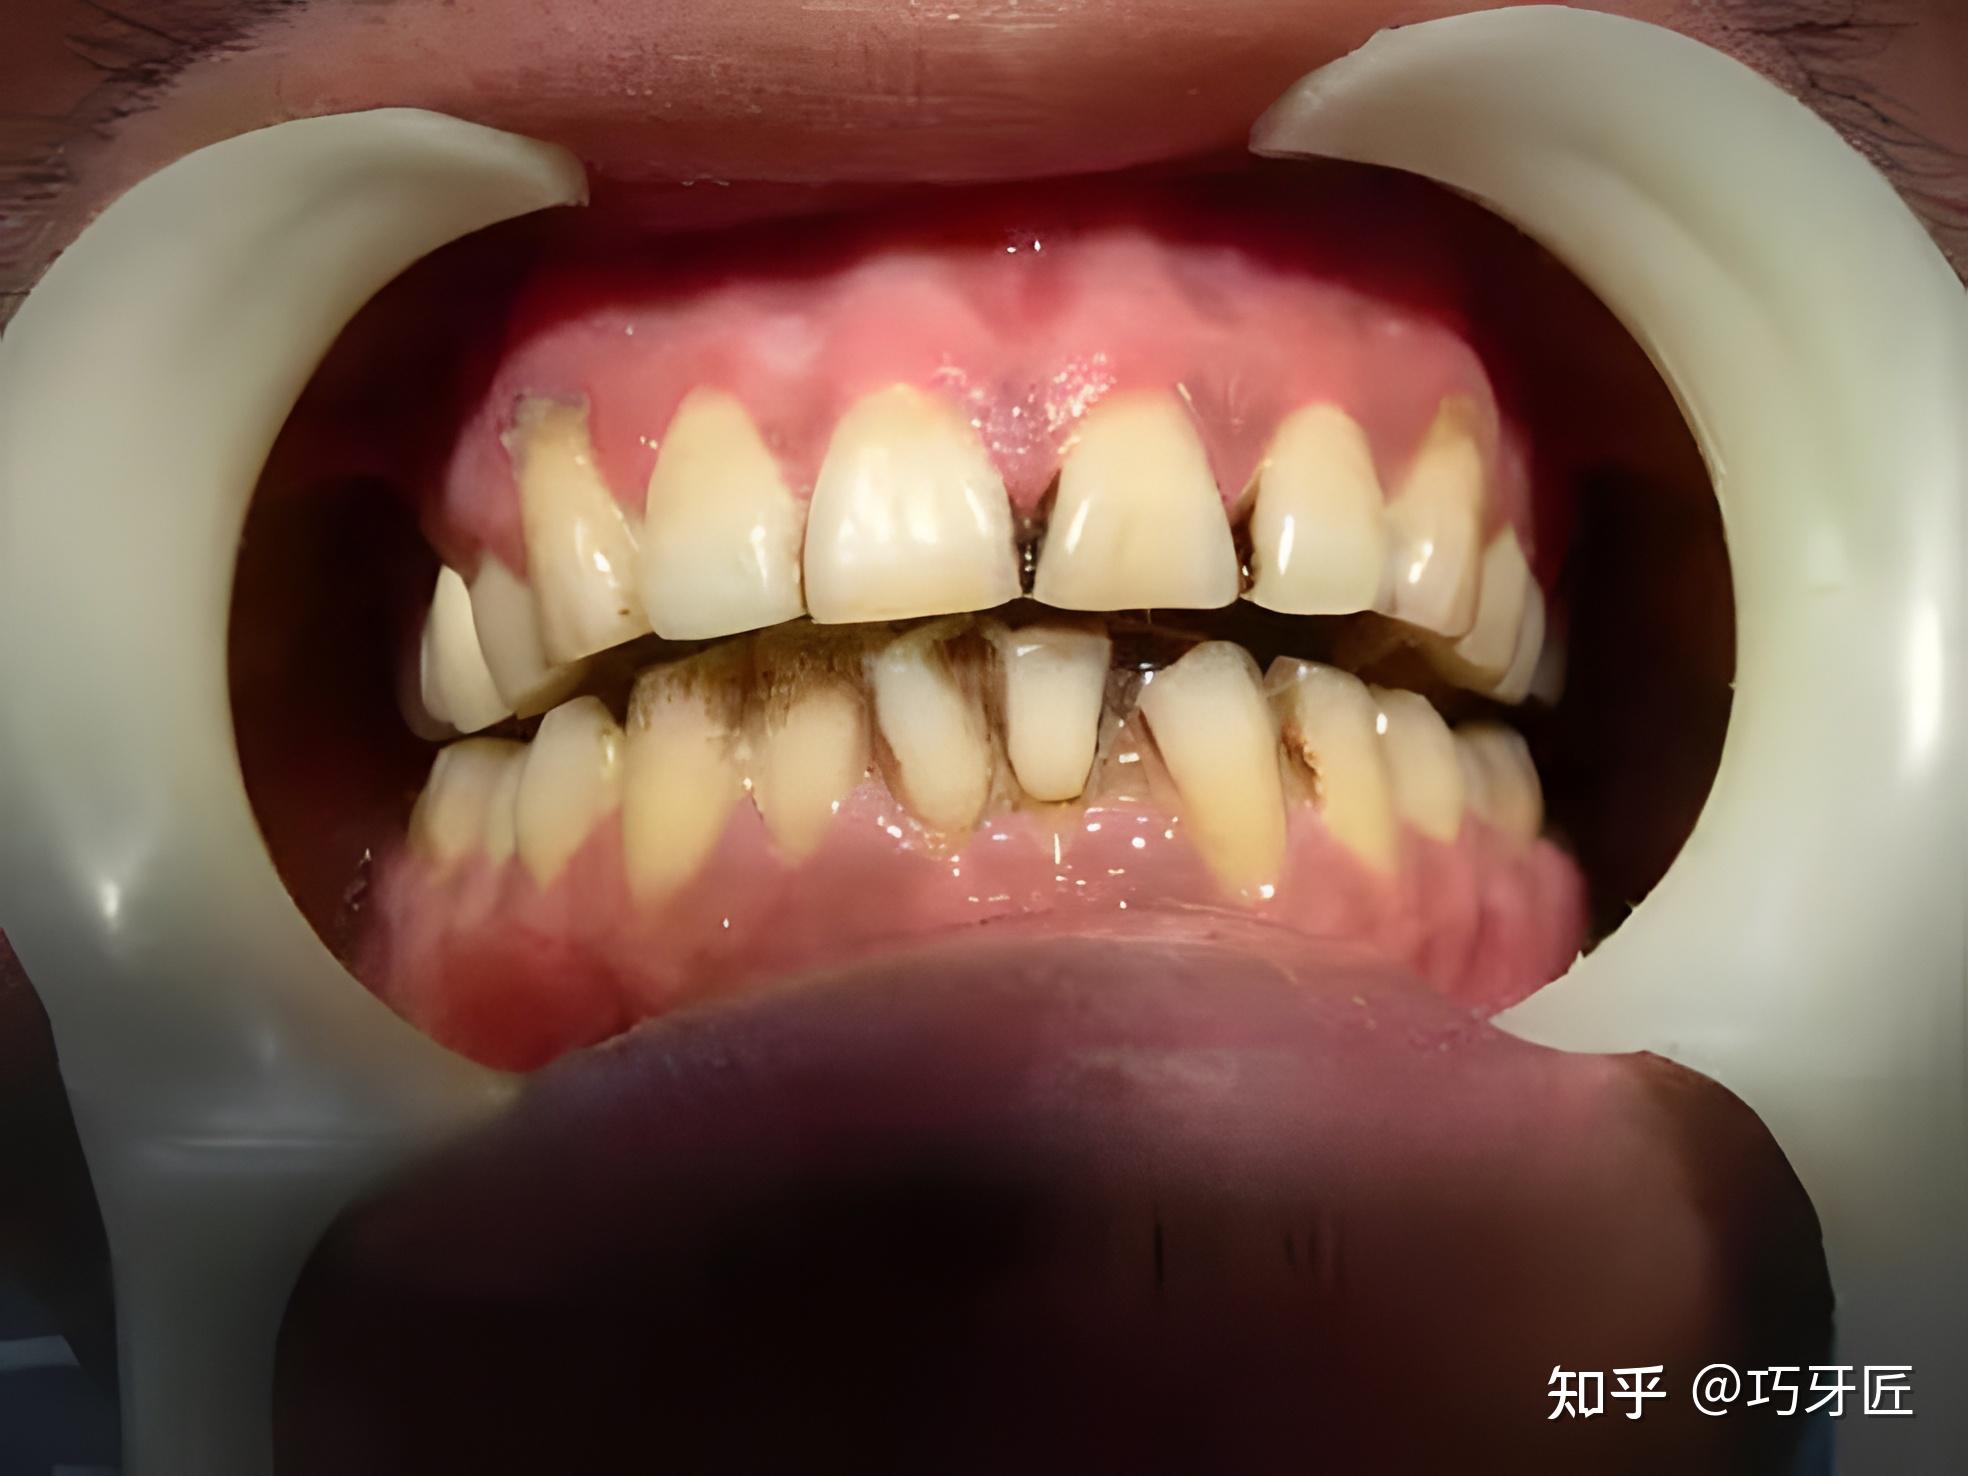 牙酸蚀症 - 口腔医学 - 天山医学院